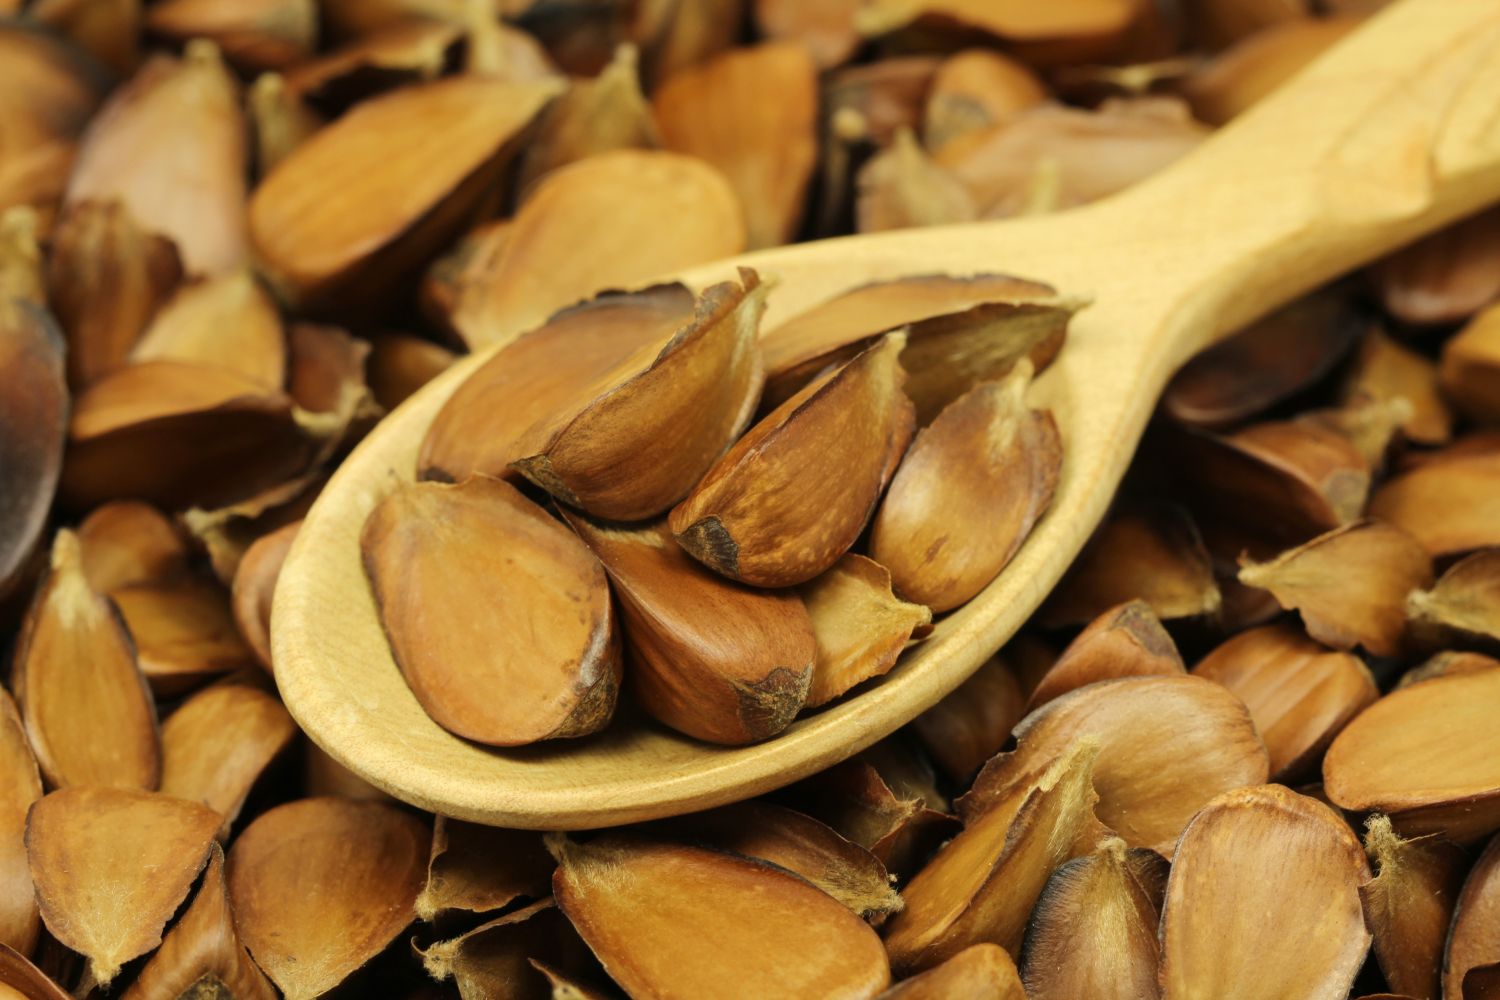 Wooden spoon full of beechnuts